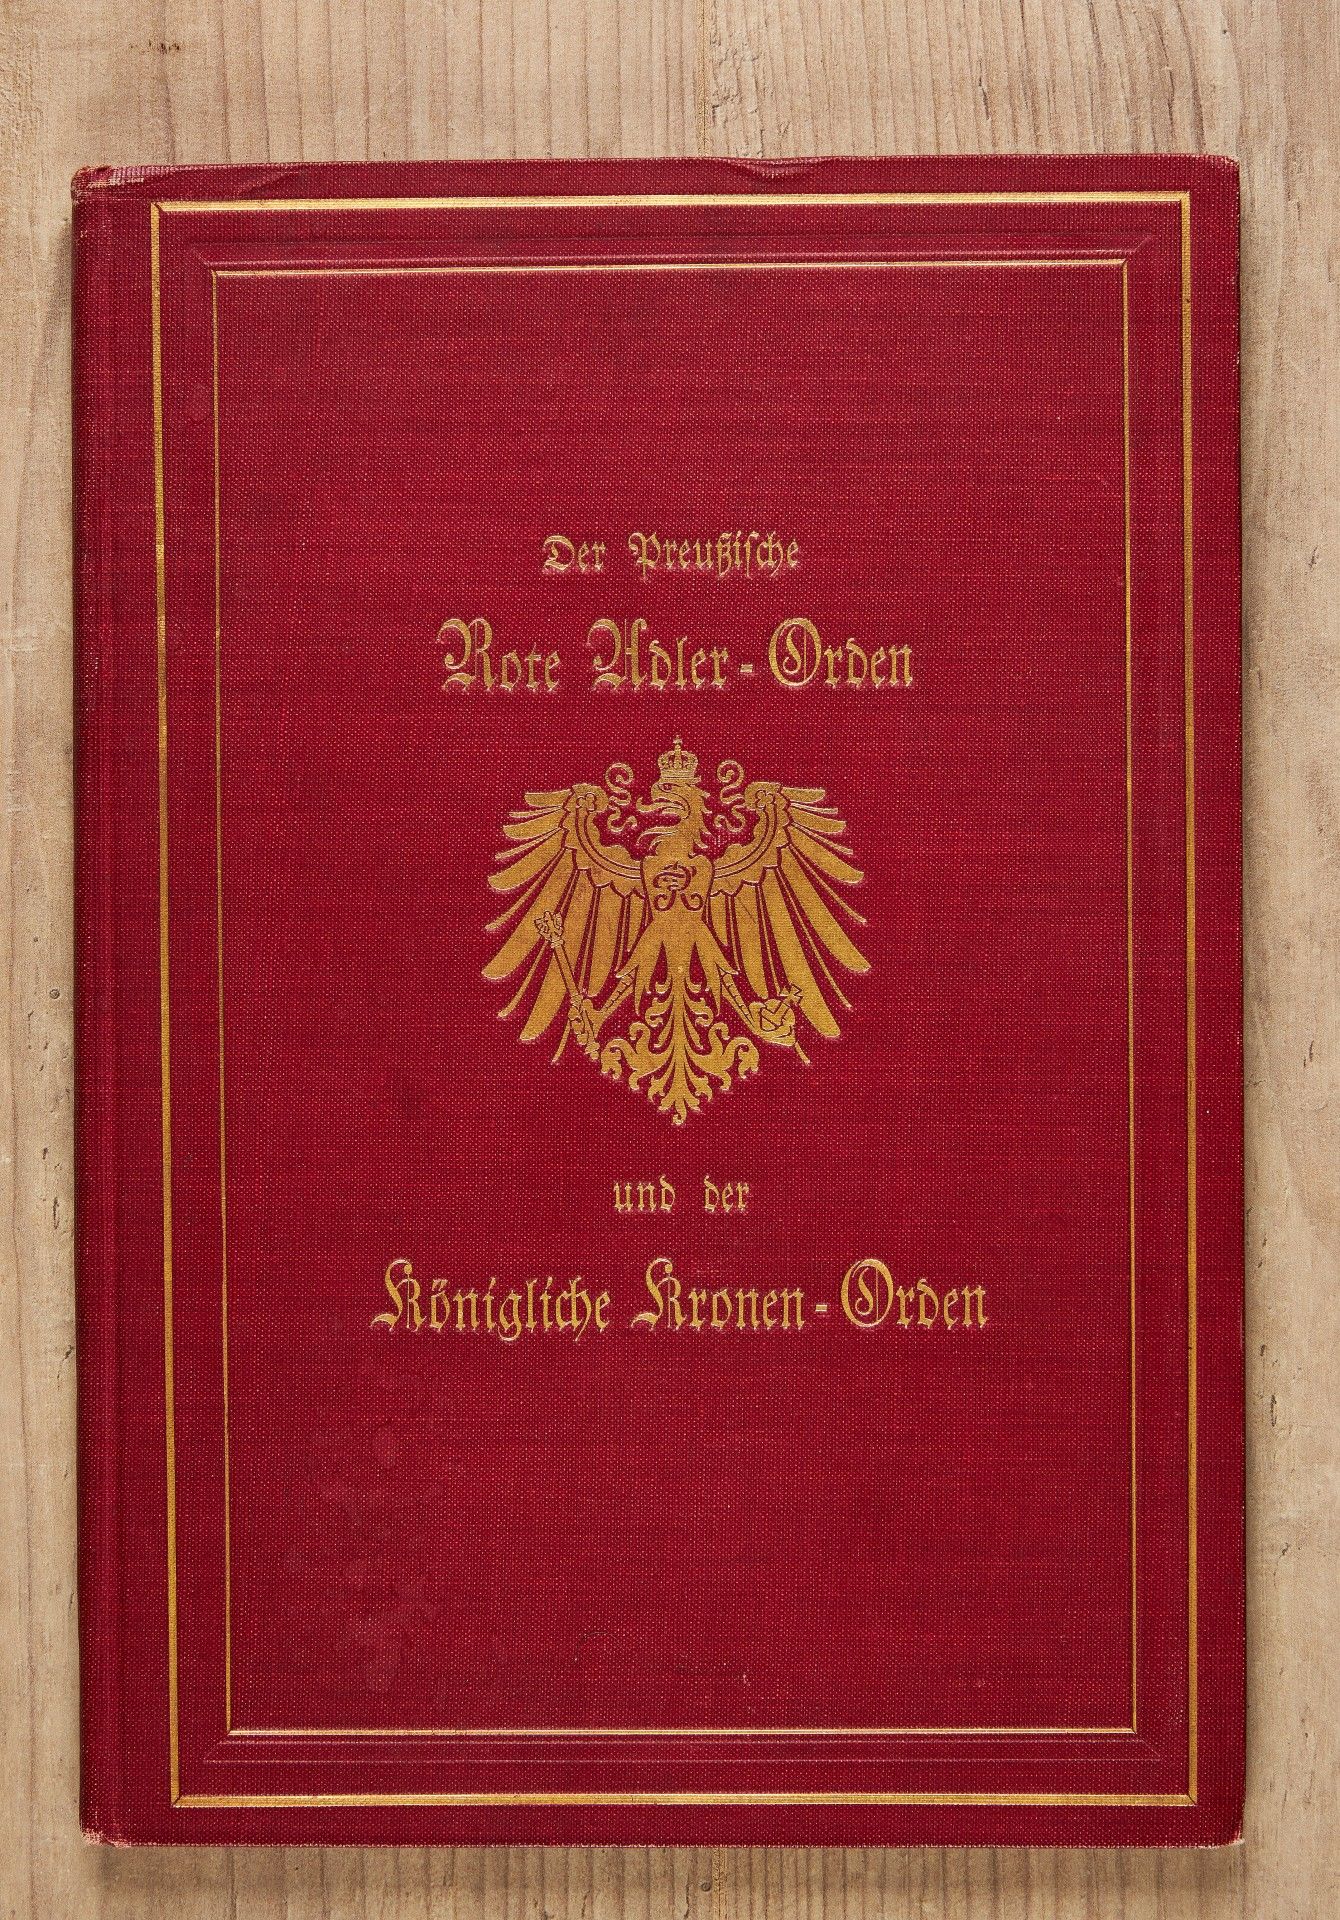 F. W. Hoeftmann, Der preußische Rote Adler-Orden und der Königliche Kronen-Orden - Image 6 of 6